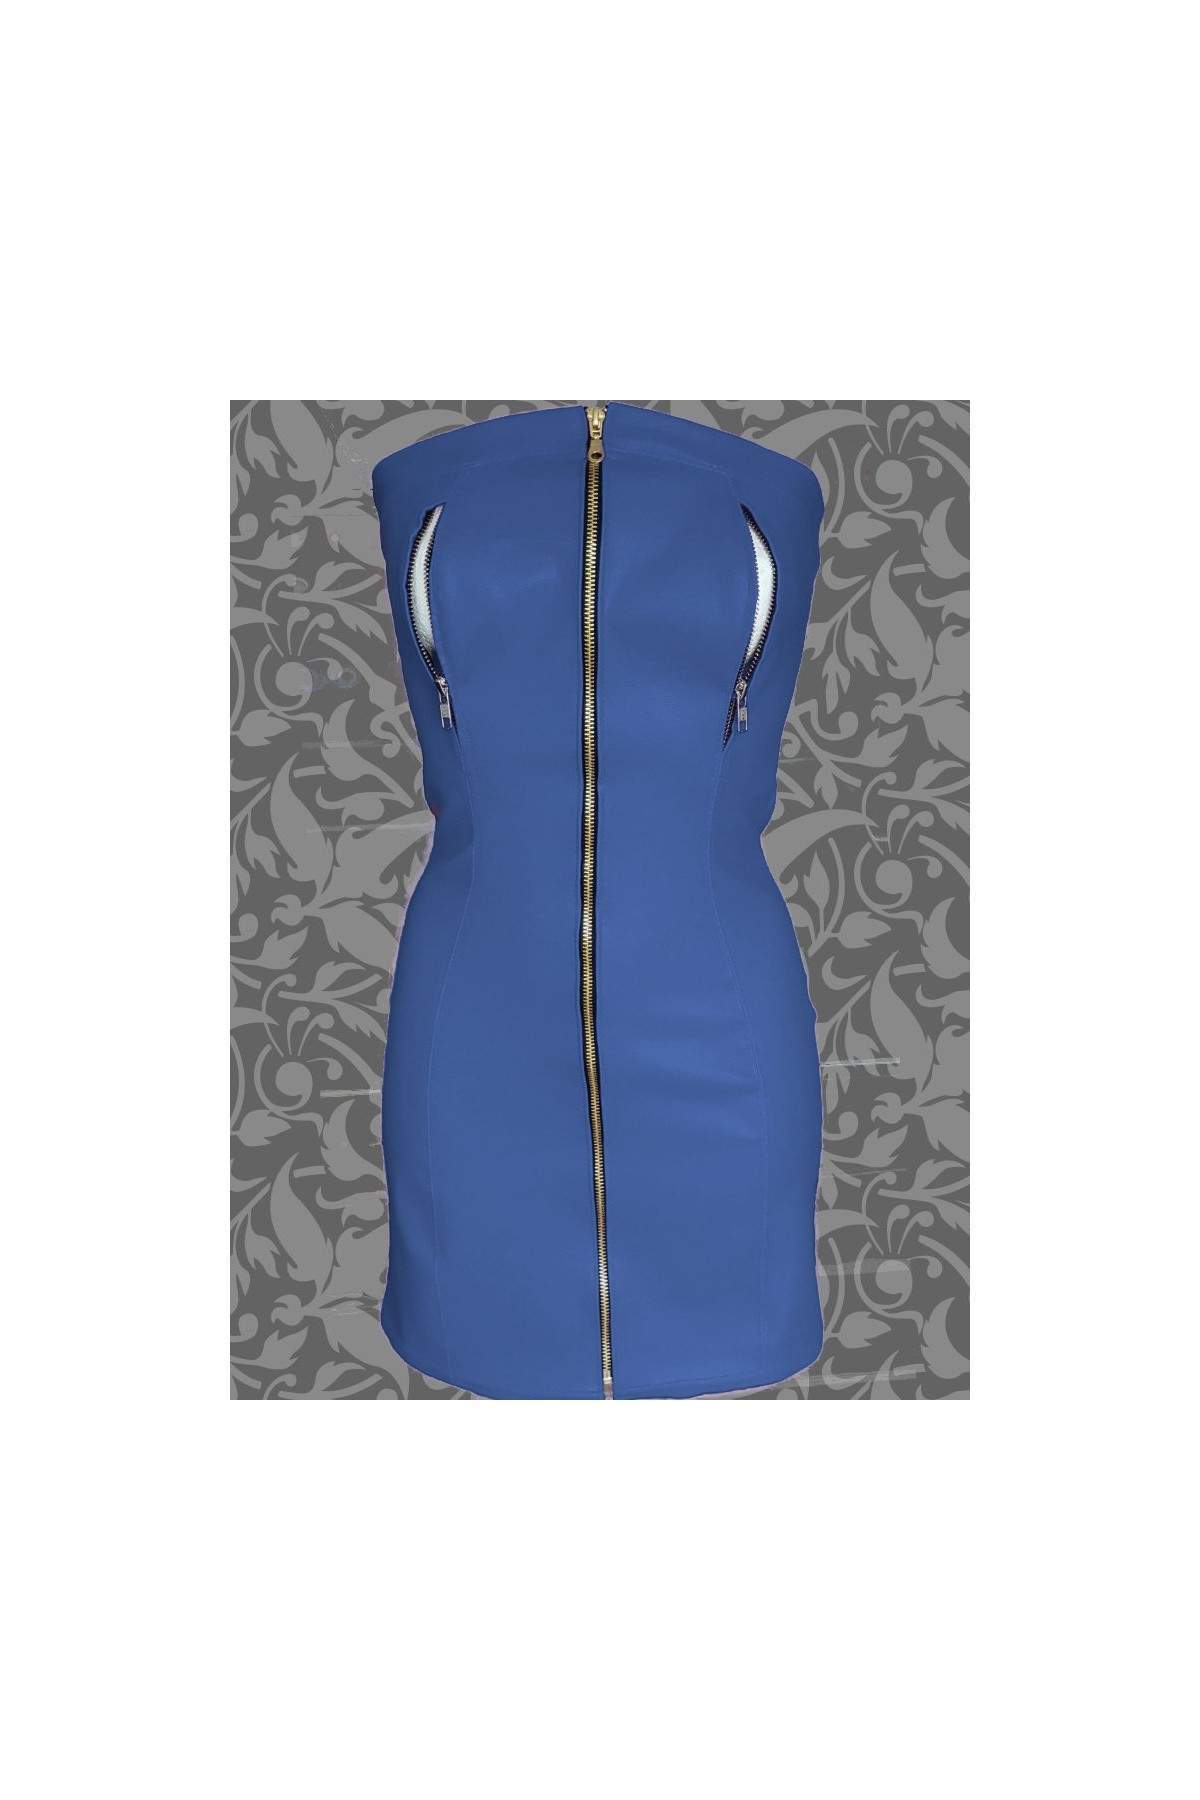 Nippelfrei Softleder Kleid blau mit Reißverschlüssen - 